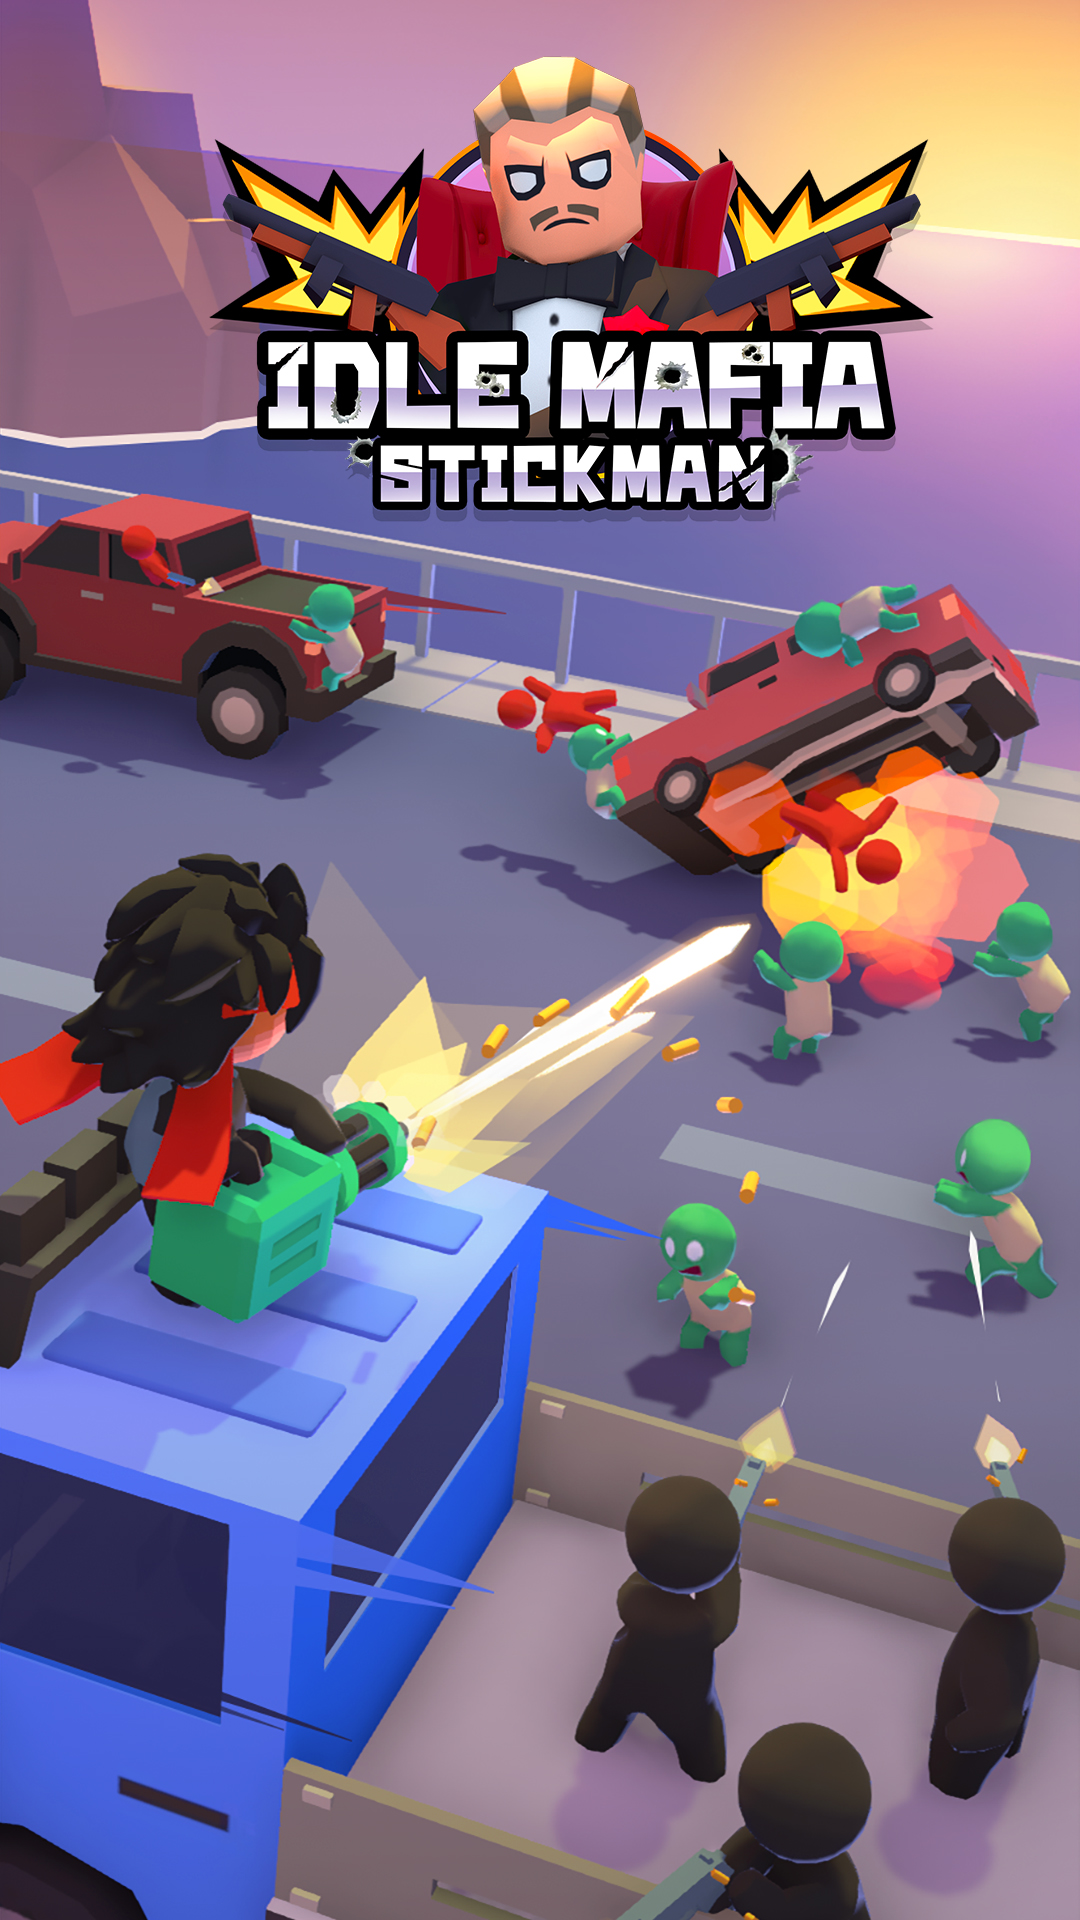 Download Stickman: Idle Mafia für Android kostenlos.